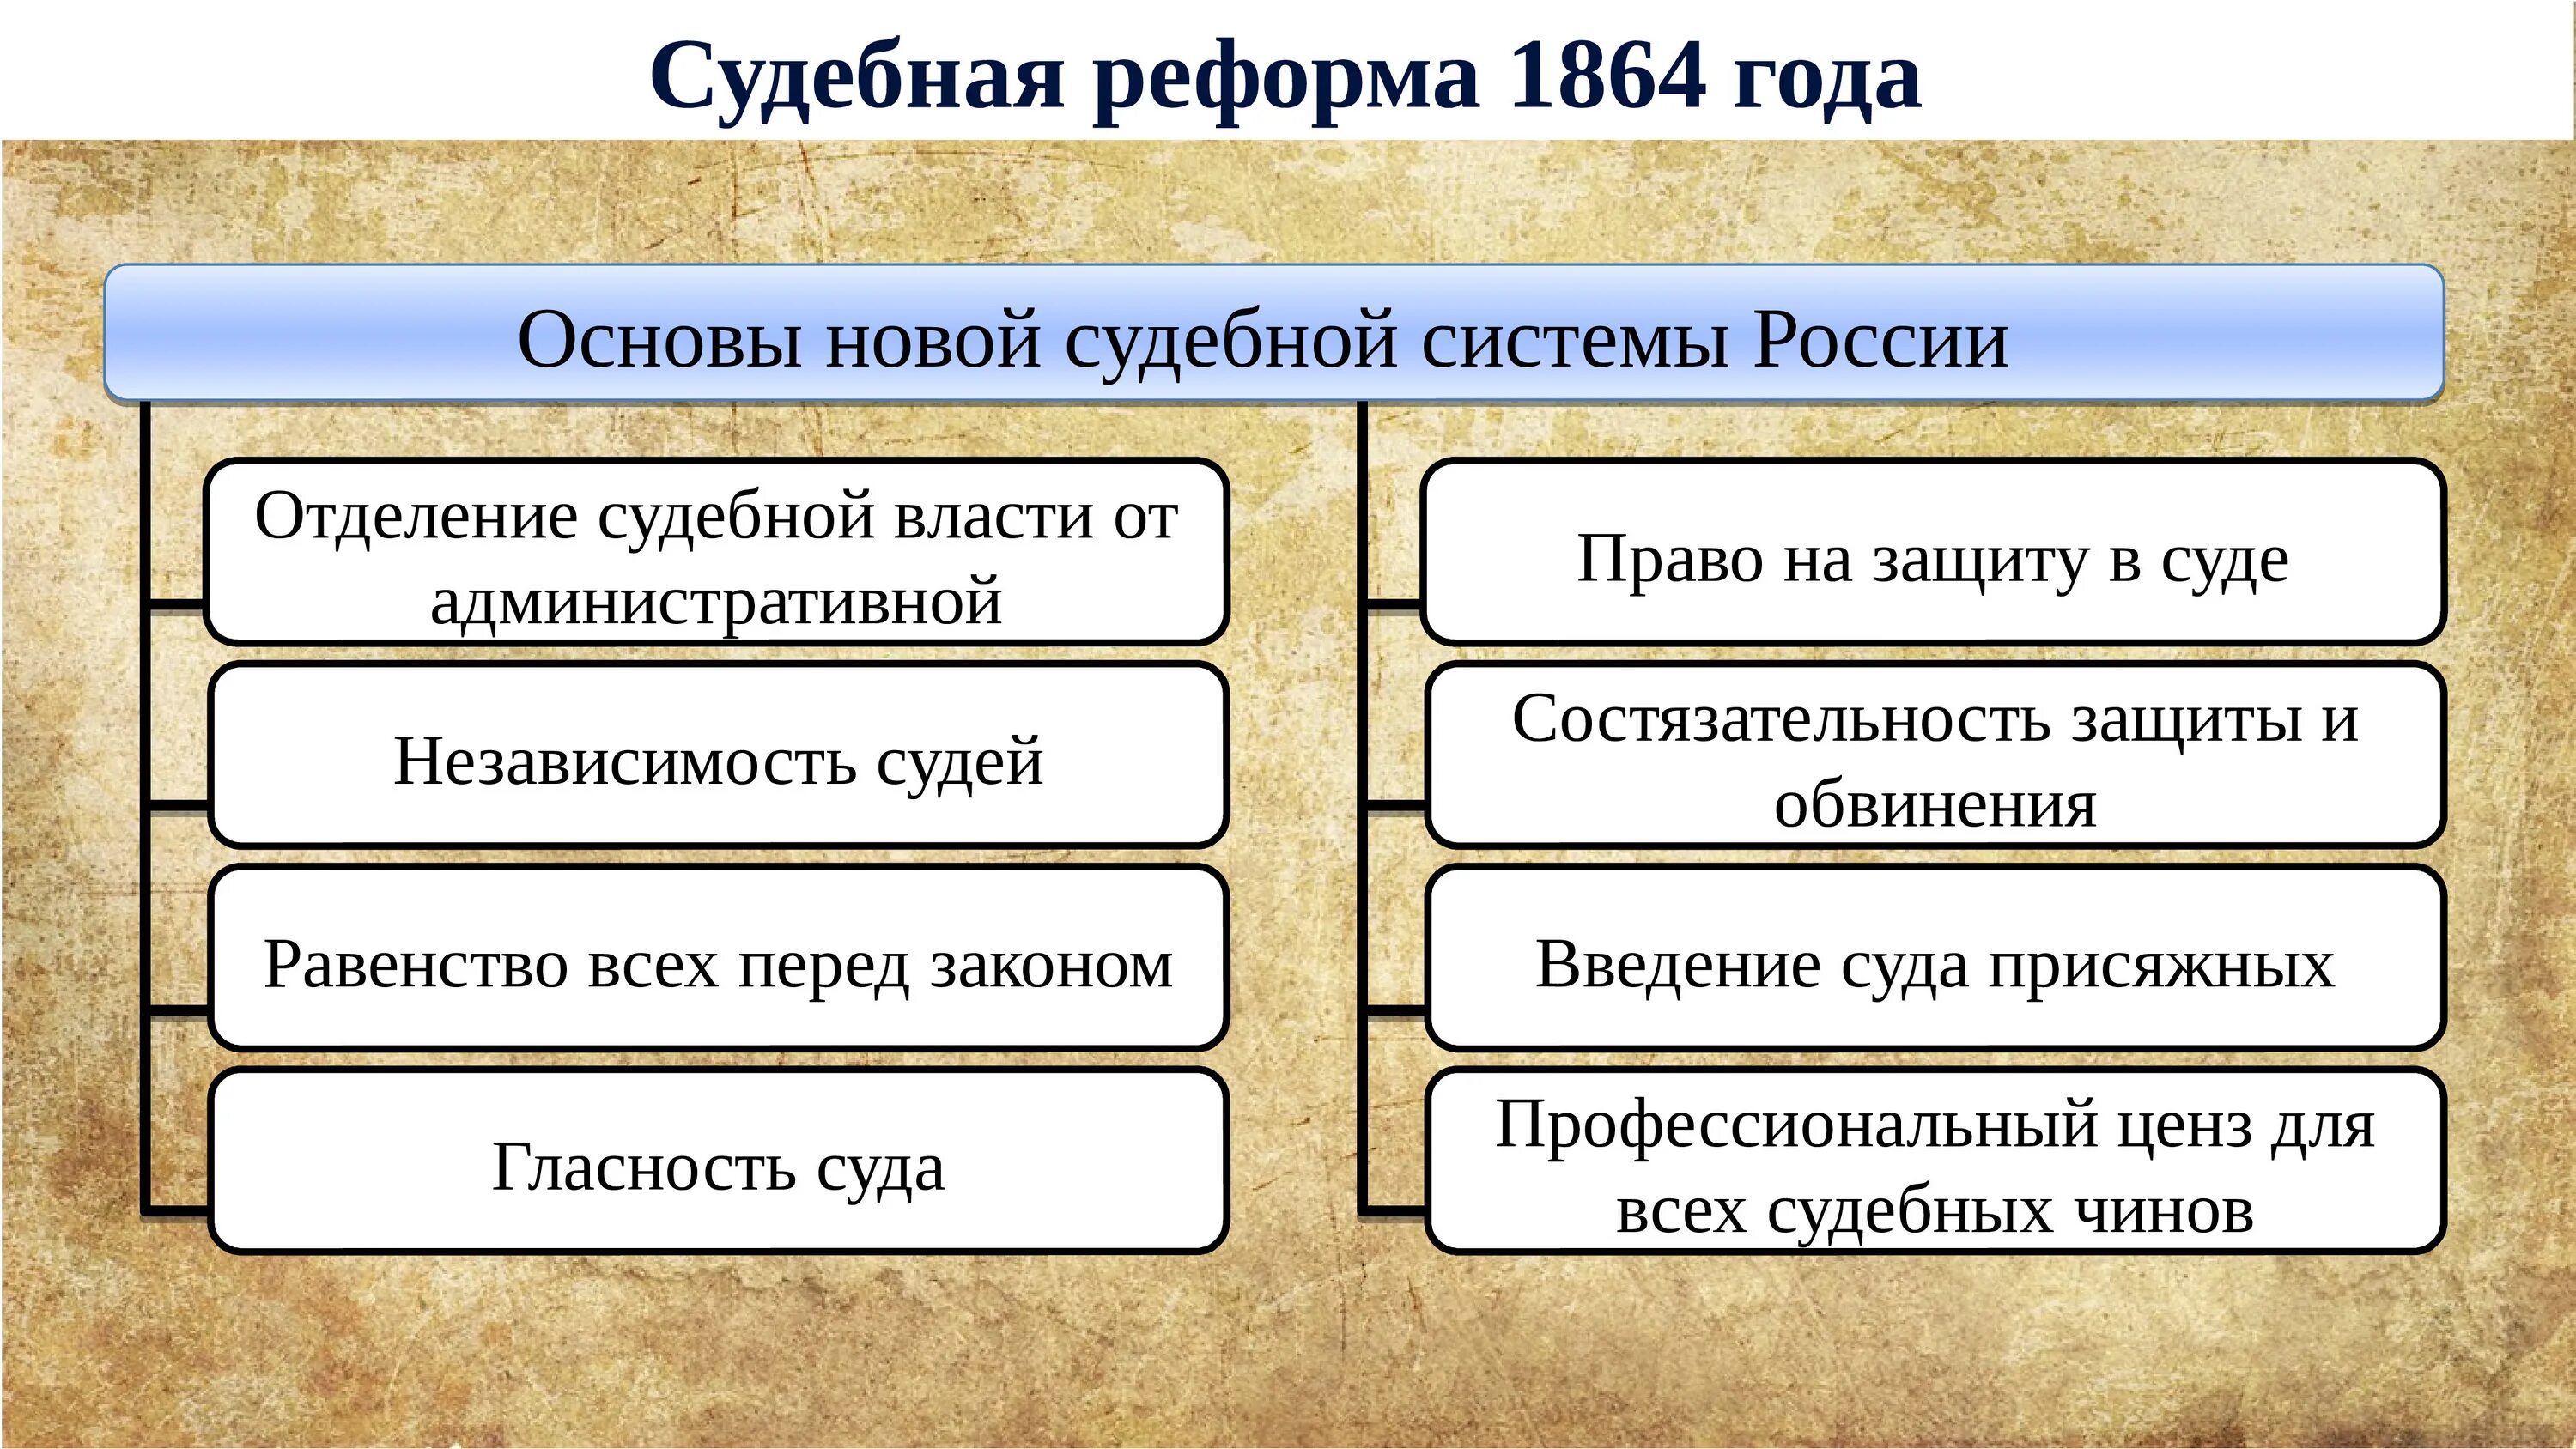 Реформы 19 века кратко. Судебная реформа либеральные реформы 60-70.